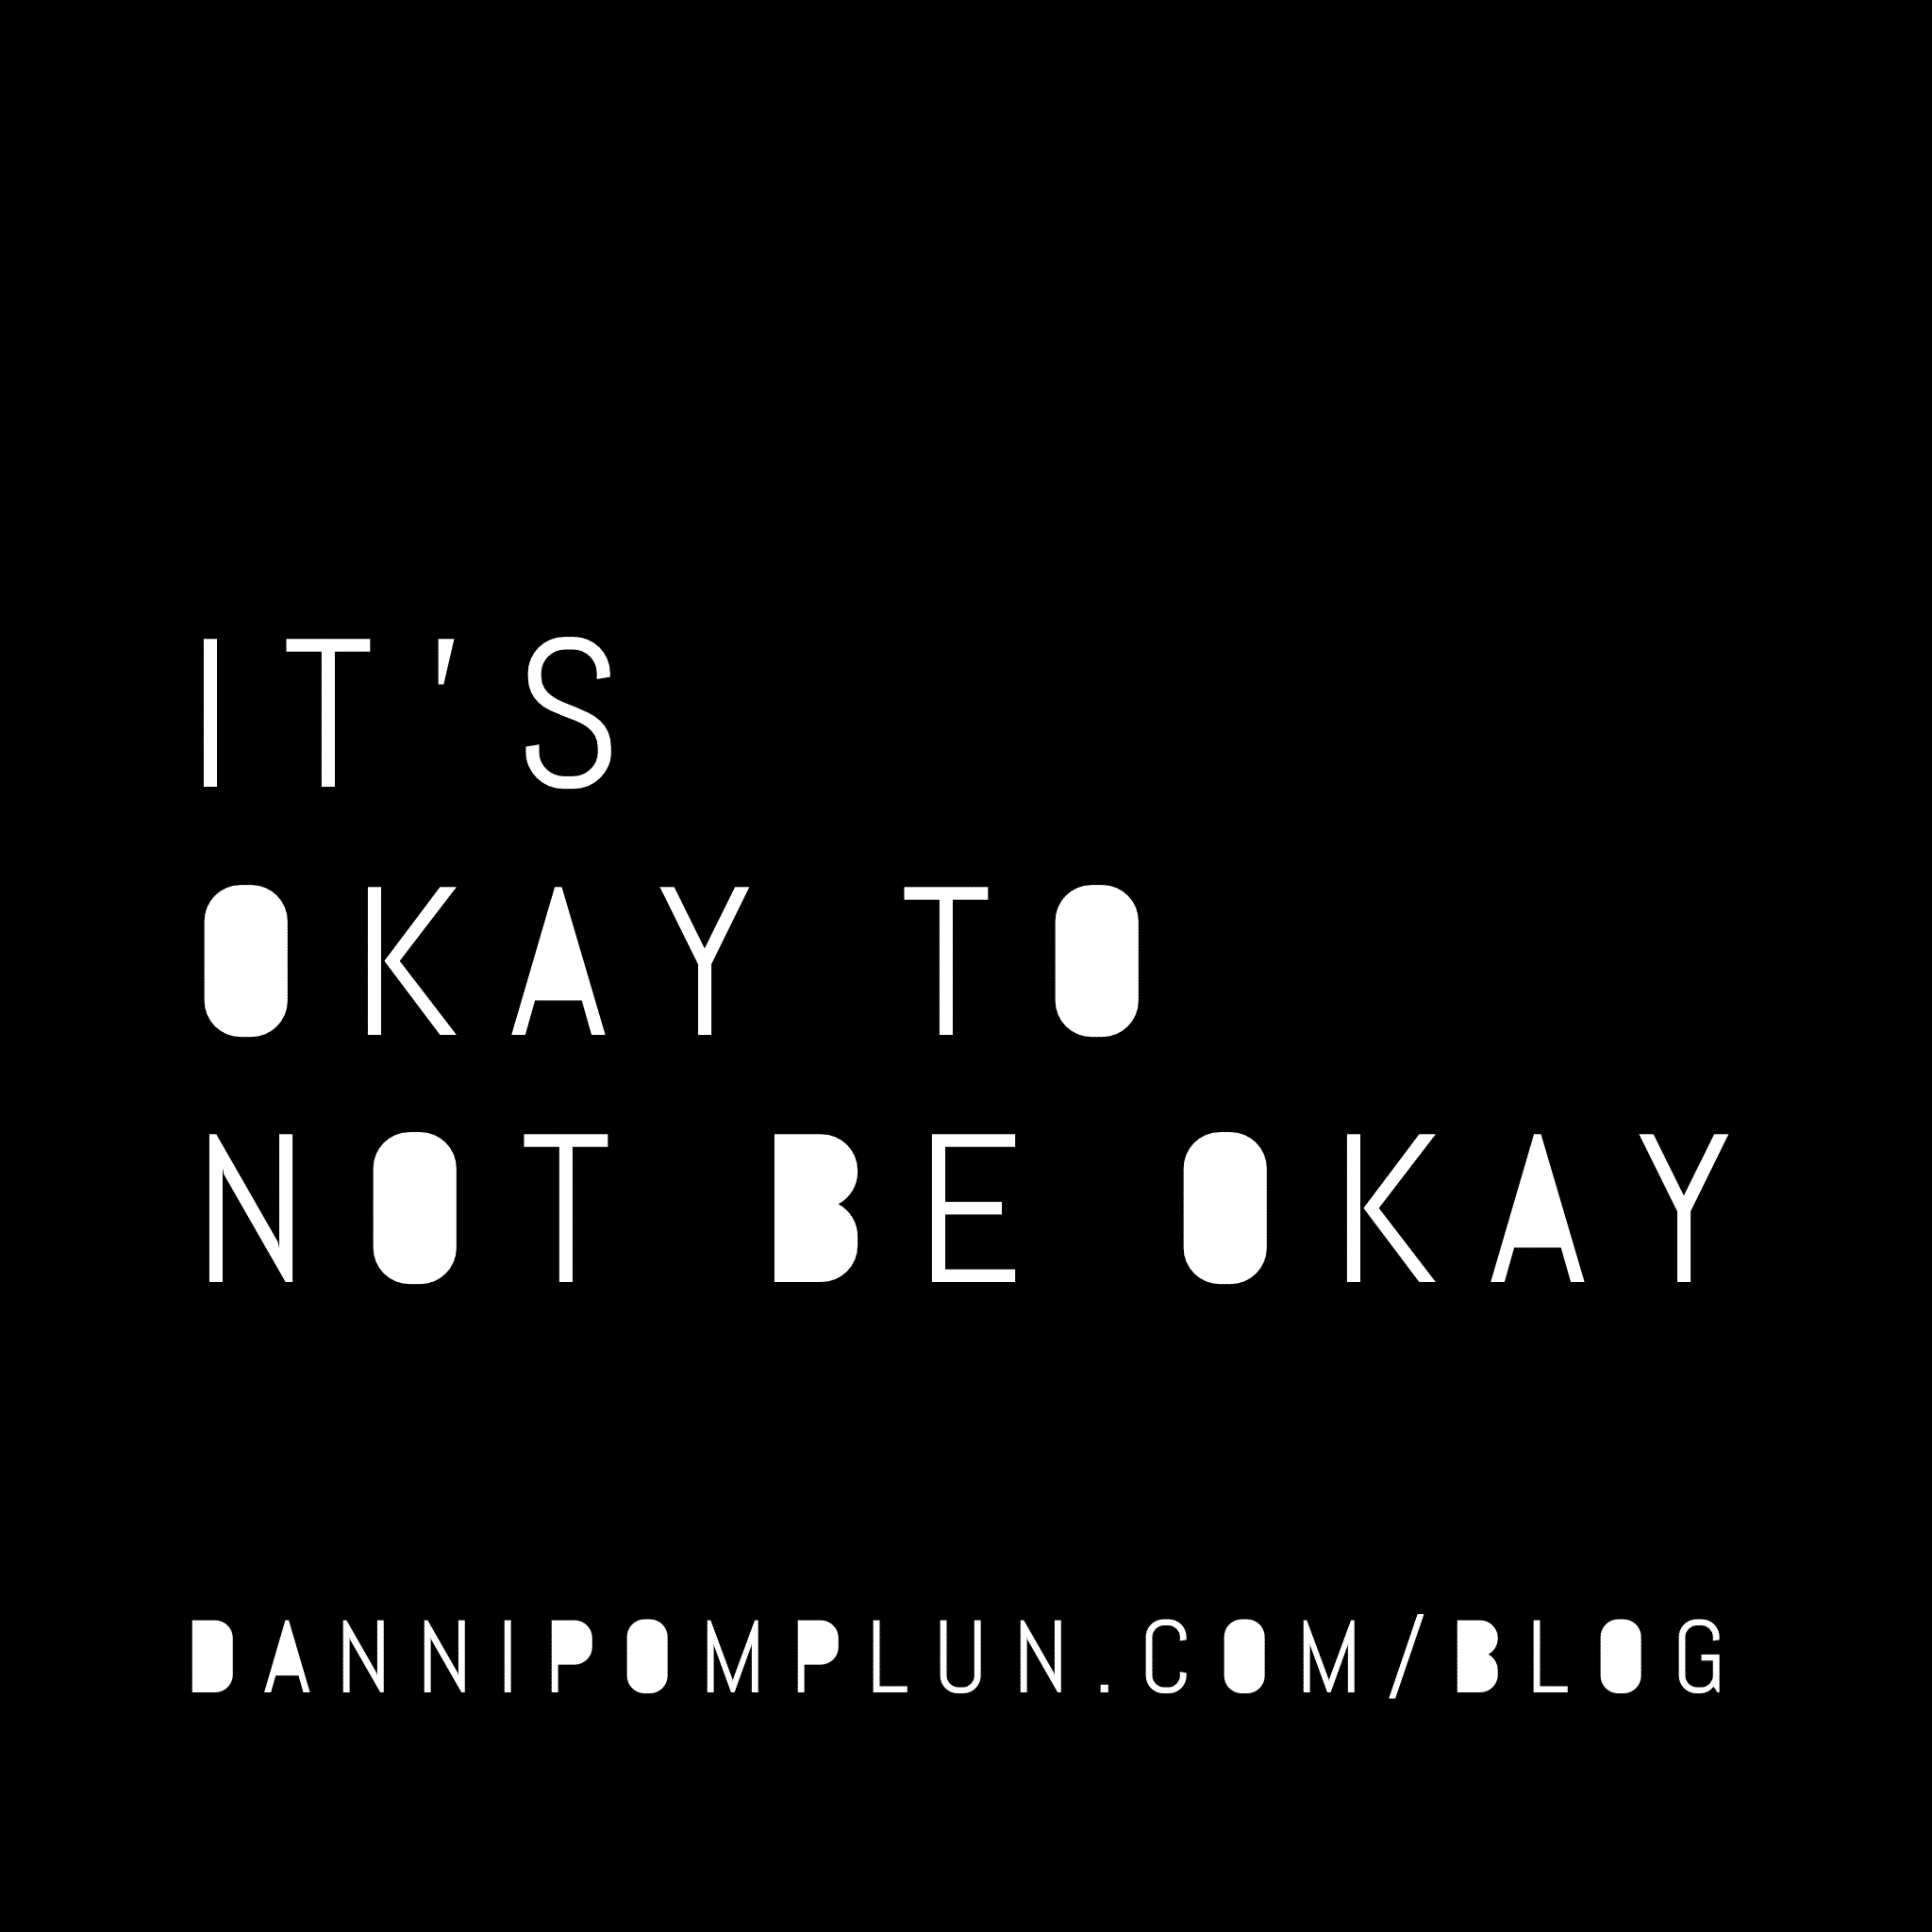 It’s okay to not be okay